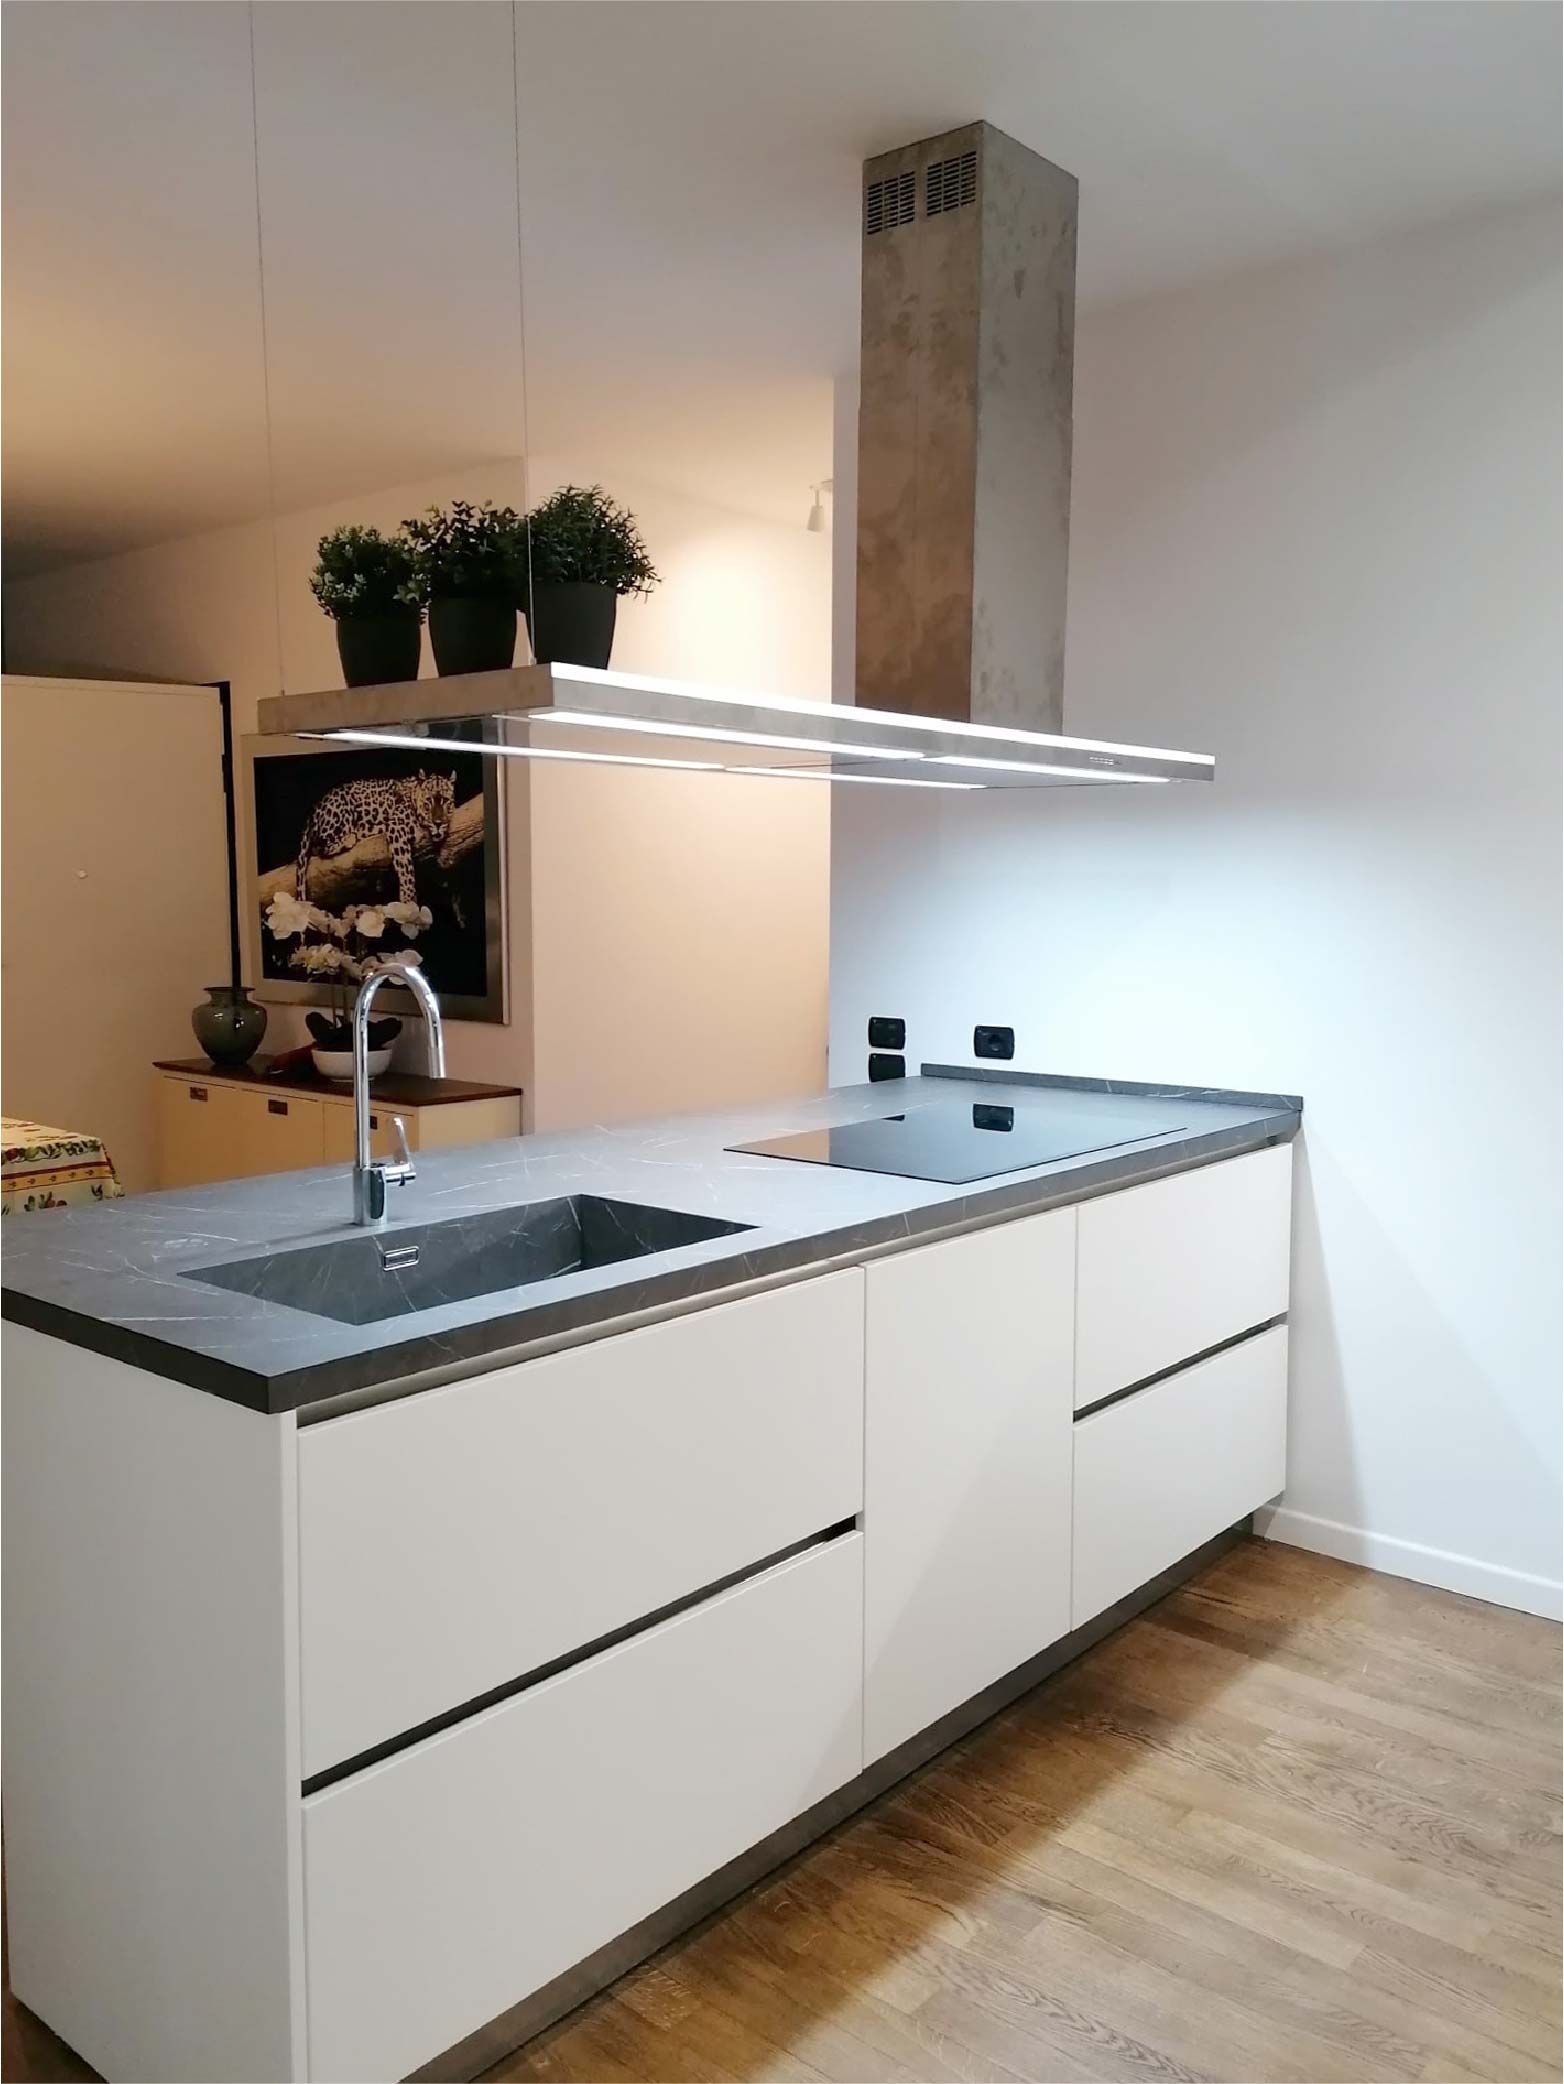 Cucina su misura laccata bianca con gole alluminio, piano in hpl grafite brown.